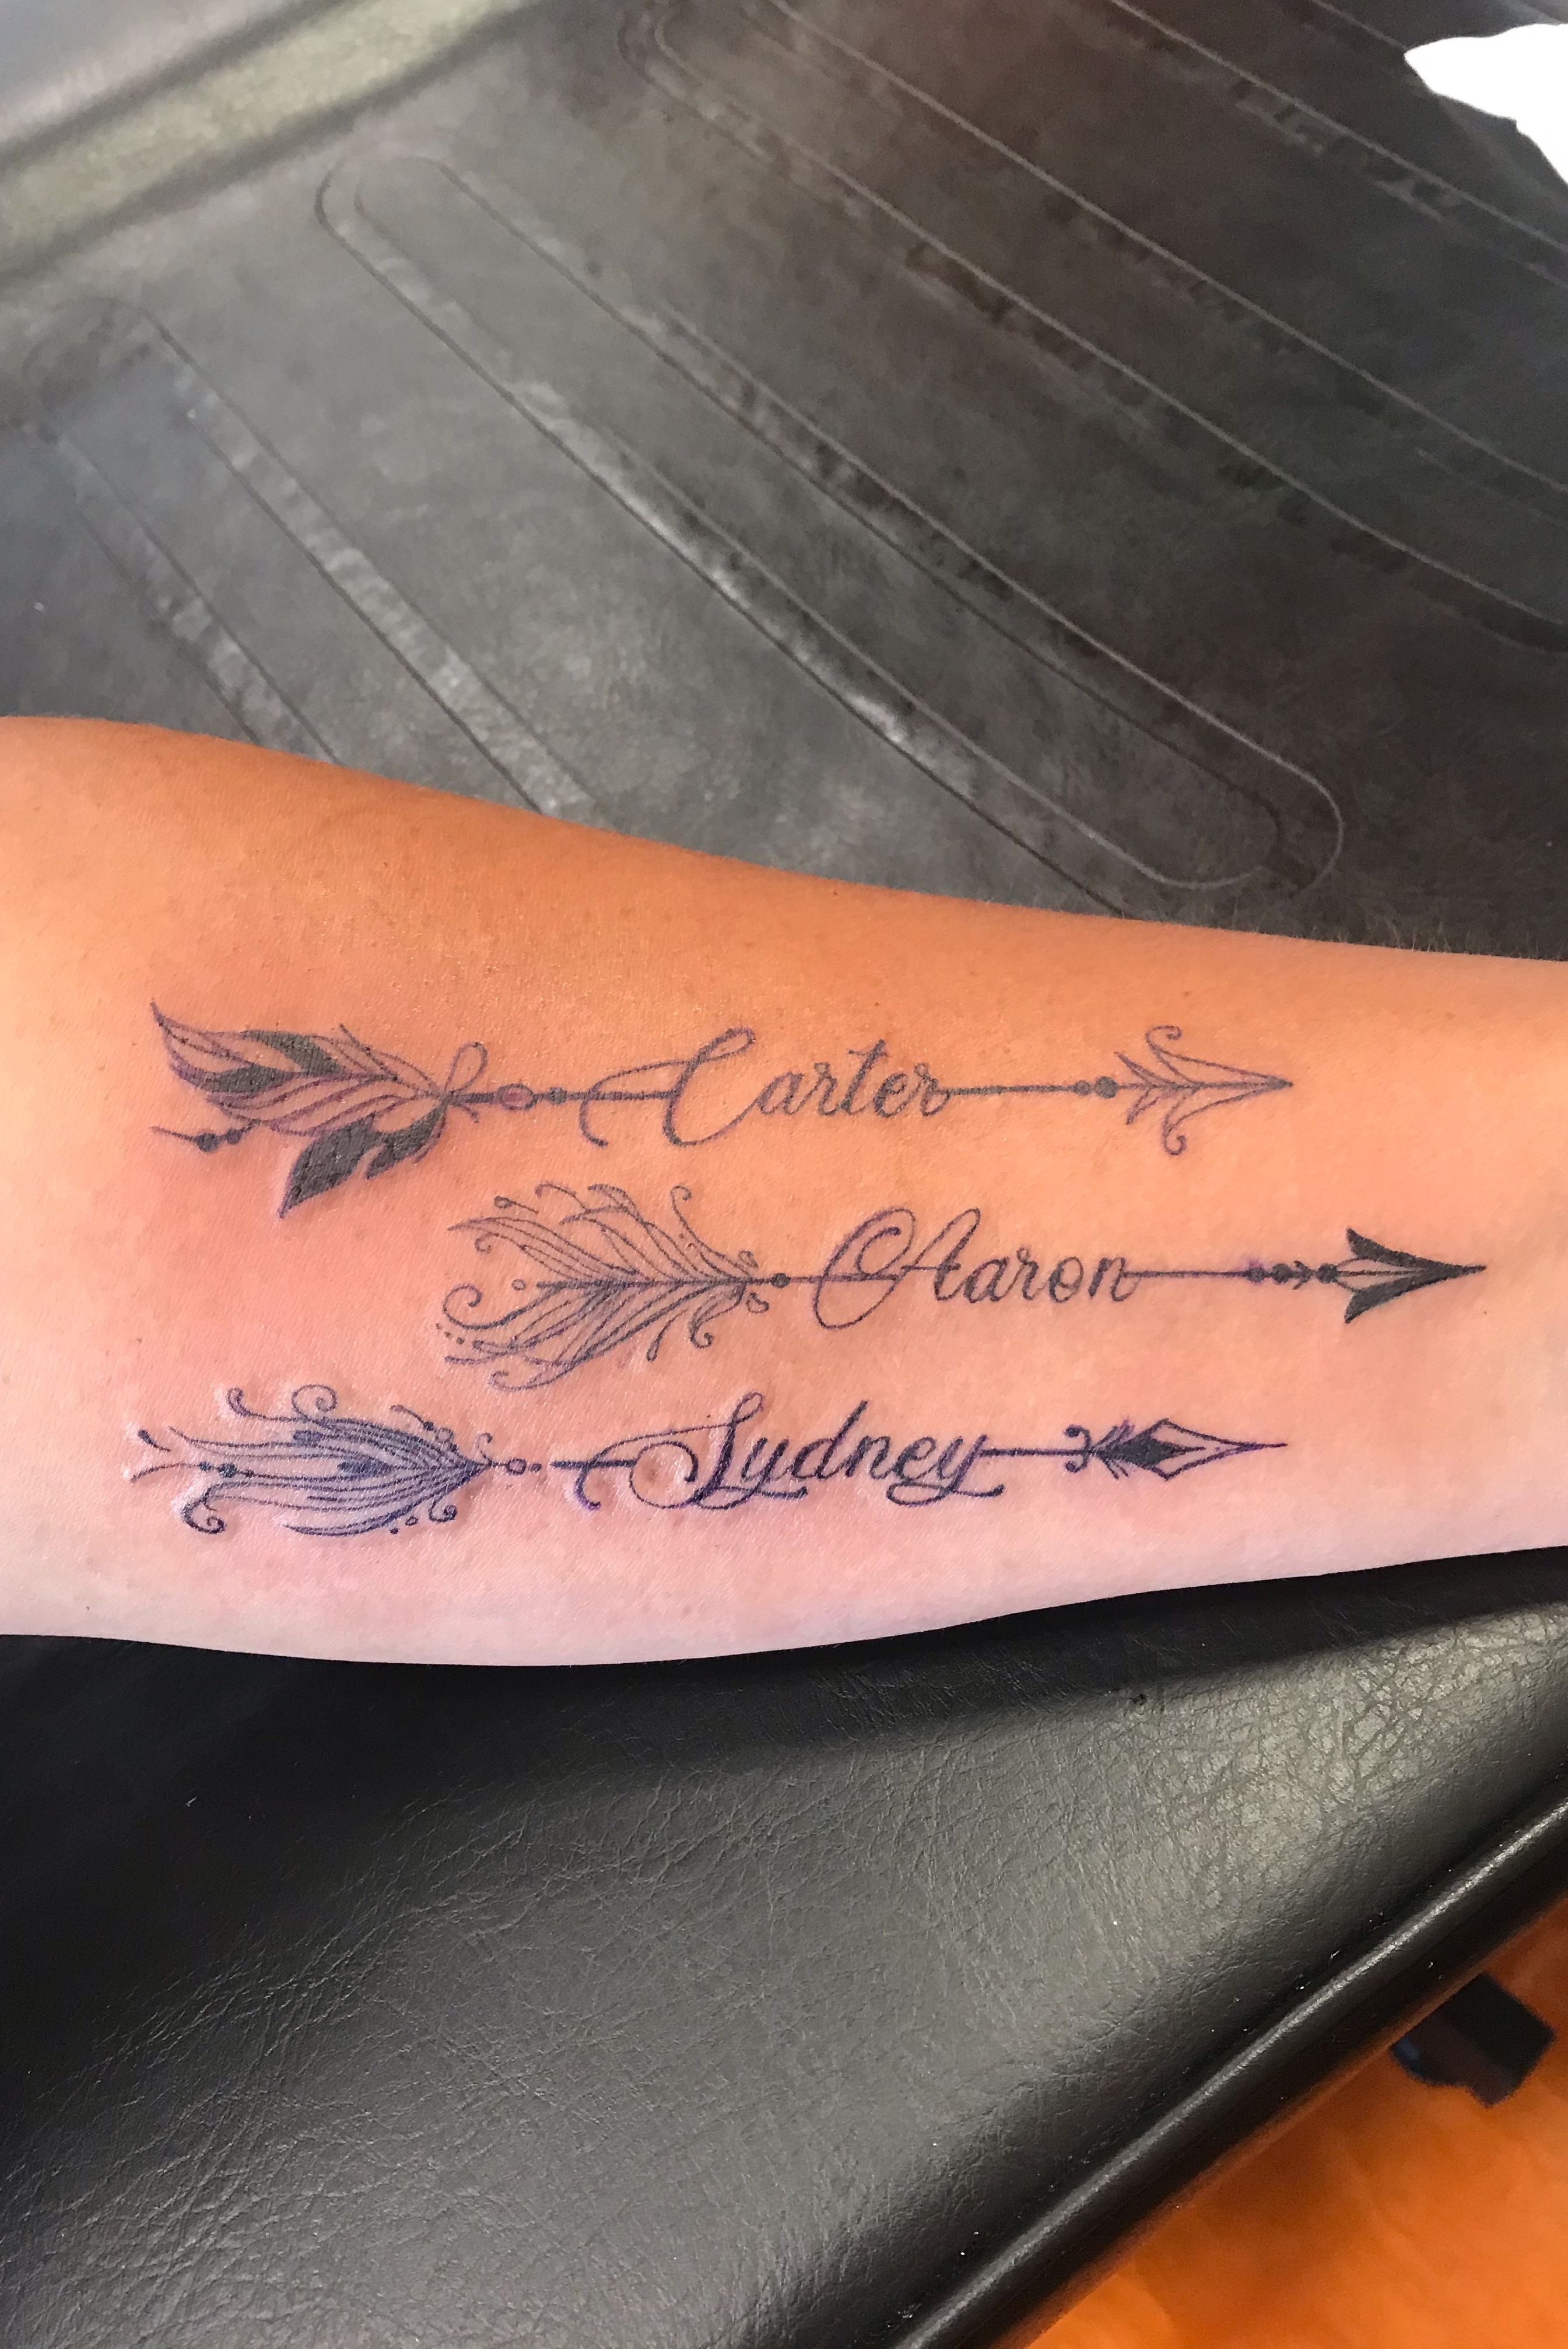 Unique Arrow Tattoos Design with Meanings - So Simple Yet Meaningful |  Дизайн татуировки со стрелой, Простая татуировка, Маленькое тату на руки